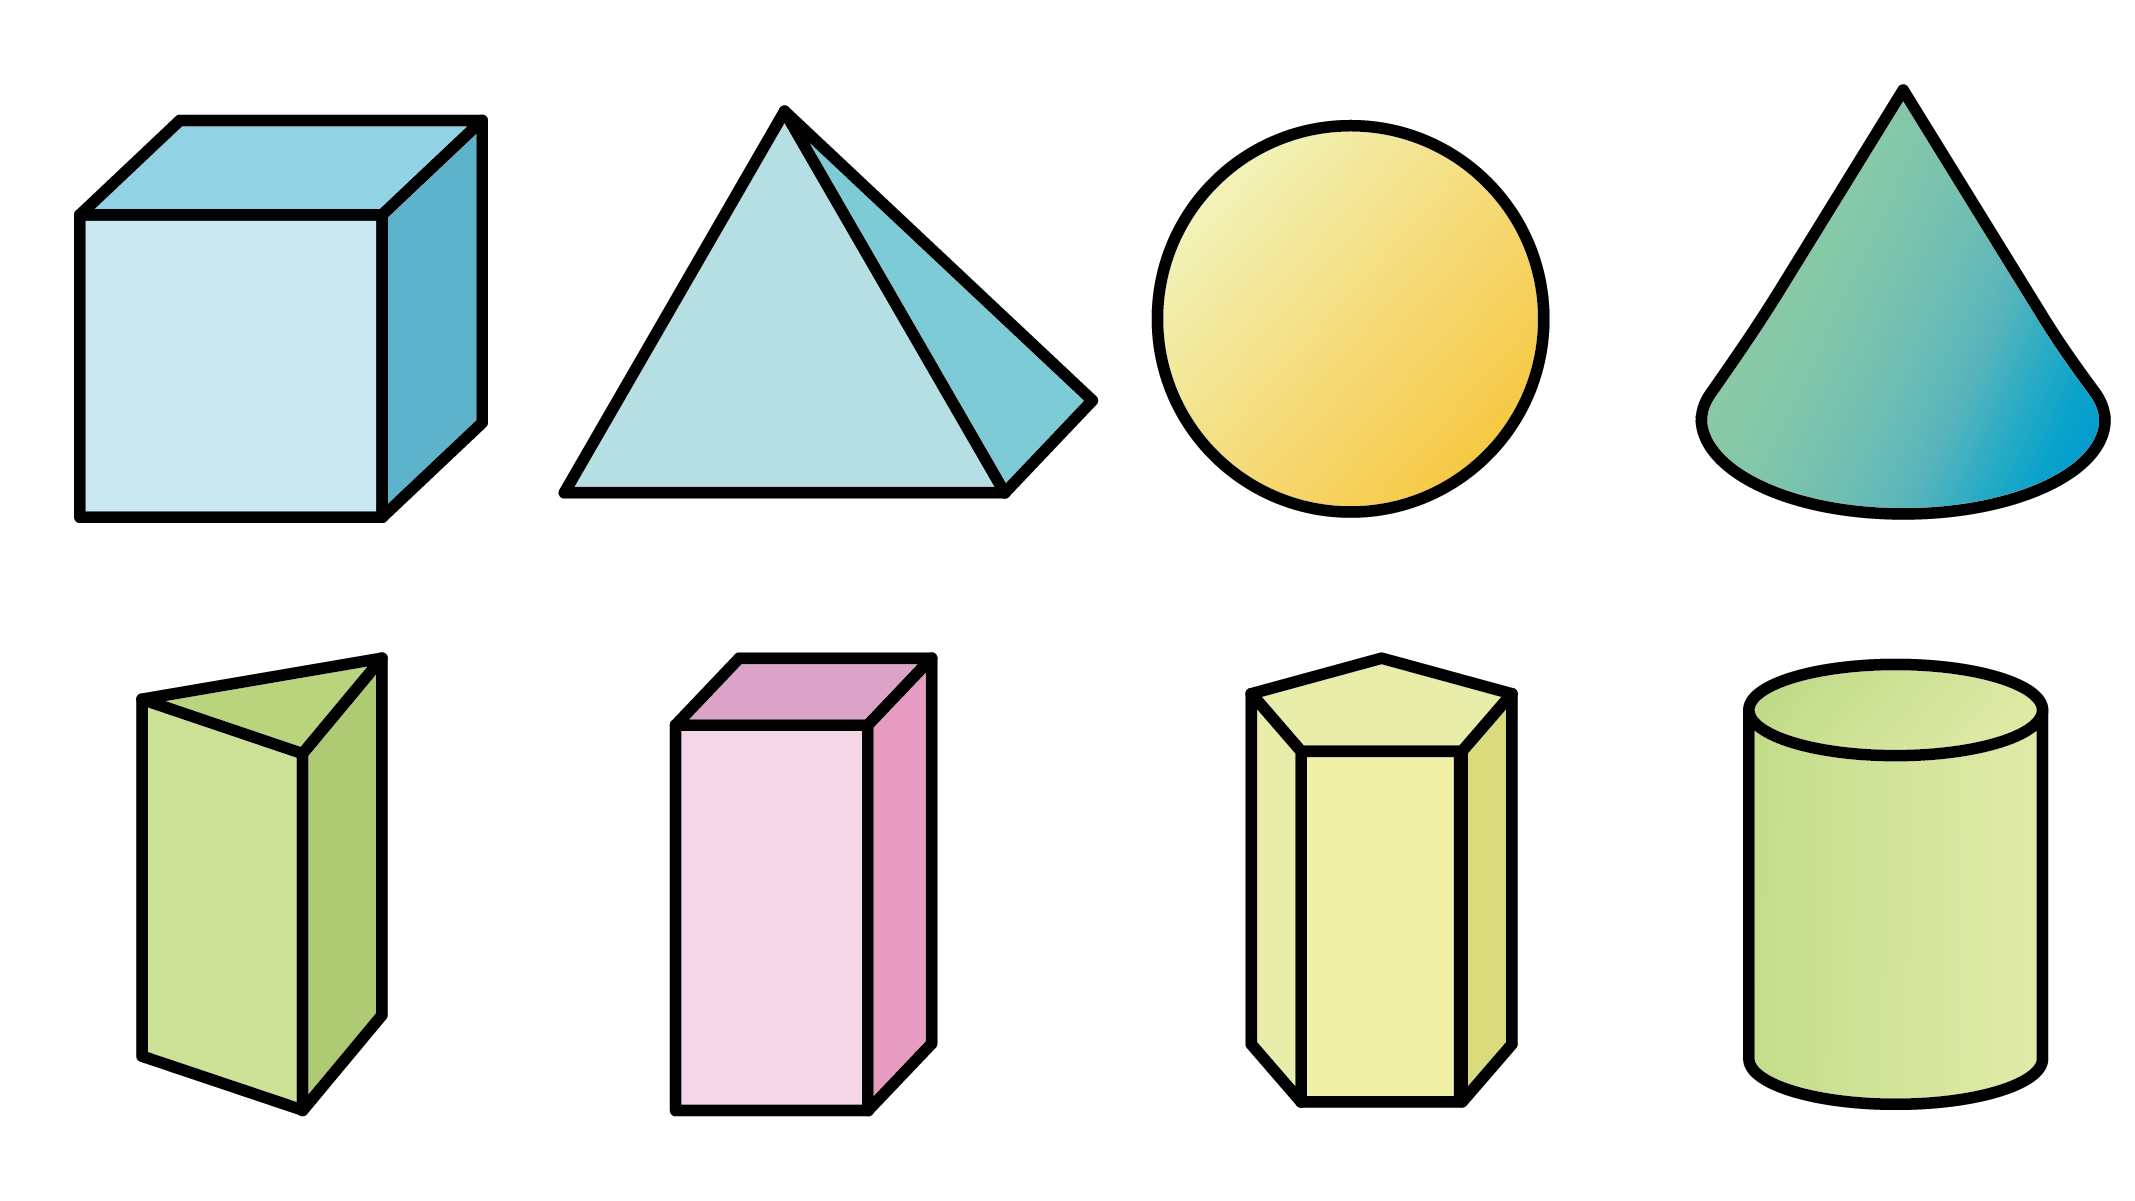 多种空间几何体#几何体#正方体#三棱锥#三棱柱 图片展示了多种常见